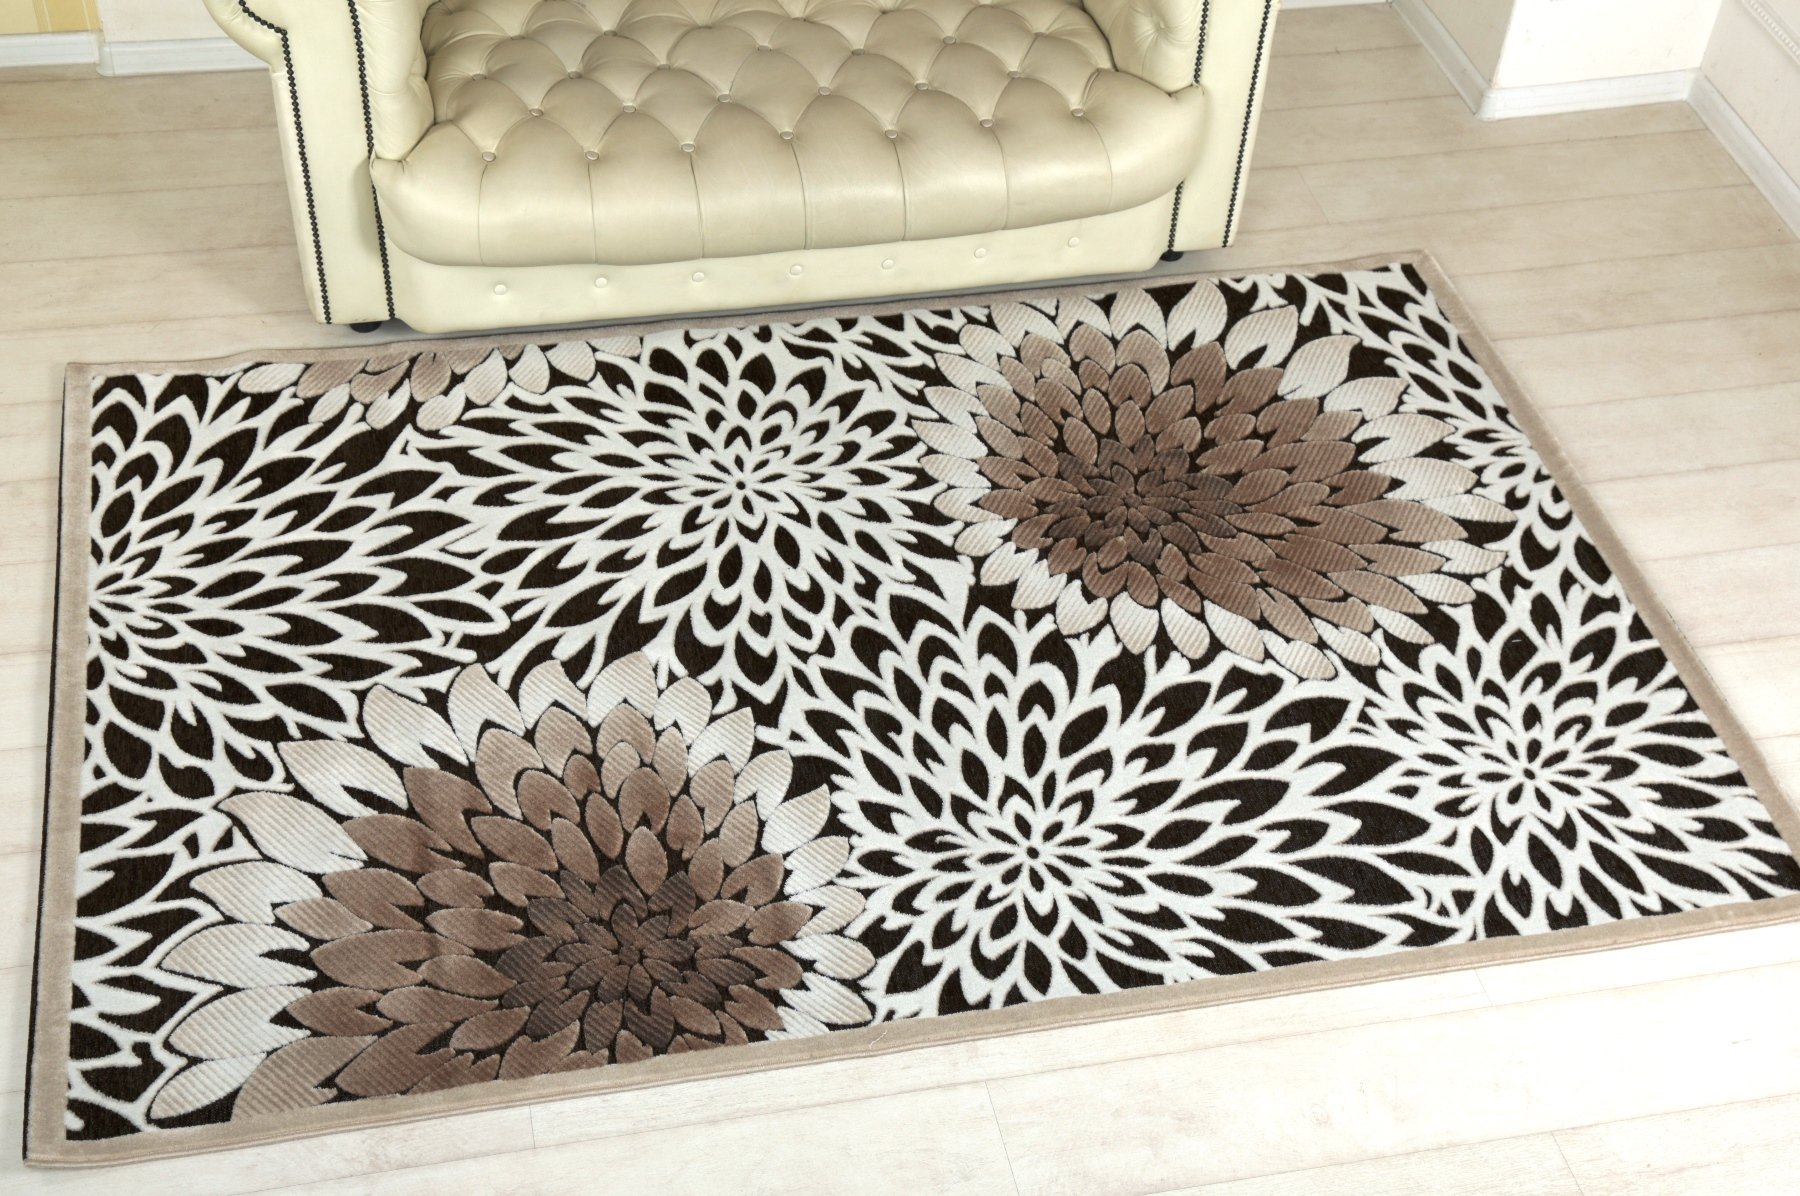 23eada0e7f25e2a9754872aad2e053fe Килим на підлогу у вітальні: вибір матеріалу і красивого малюнка підлогового покриття для приміщення різного розміру